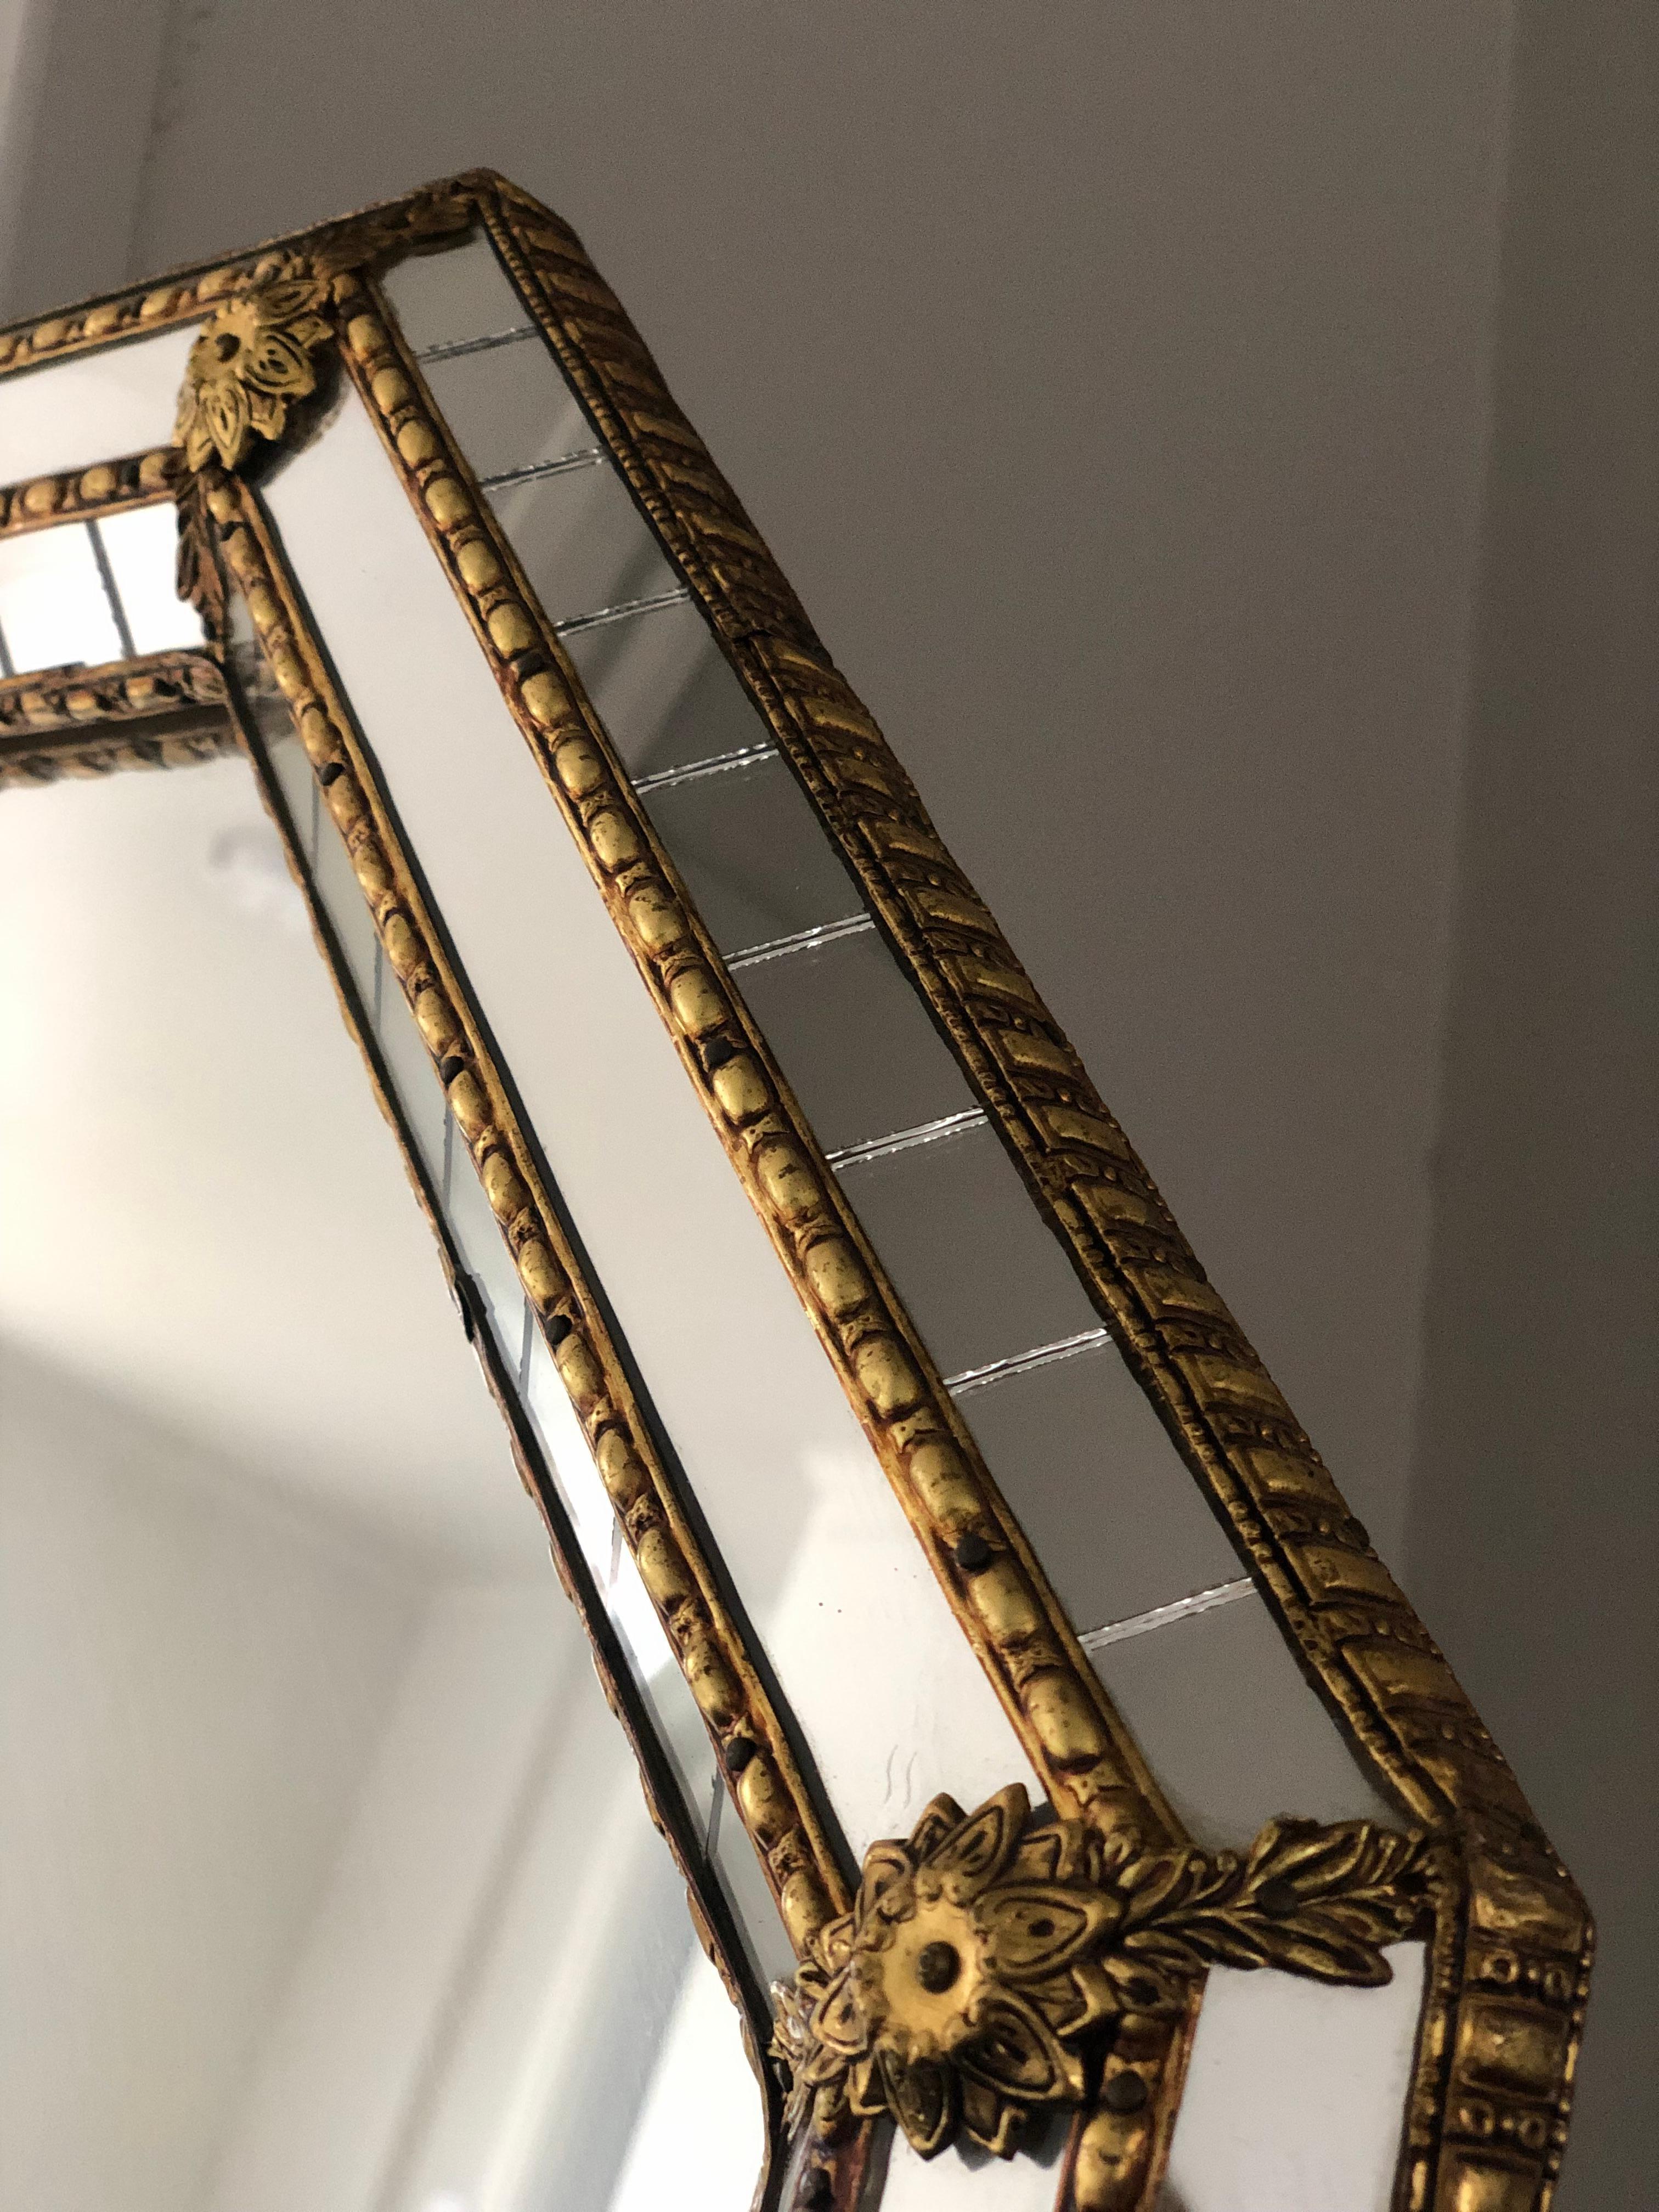 Magnifique miroir octogonal espagnol avec un cadre en verre vénitien avec une bande dorée en laiton. Le cadre est composé de petits cristaux à l'extérieur et à l'intérieur, et de cristaux plus grands dans la ligne centrale. La bande de laiton